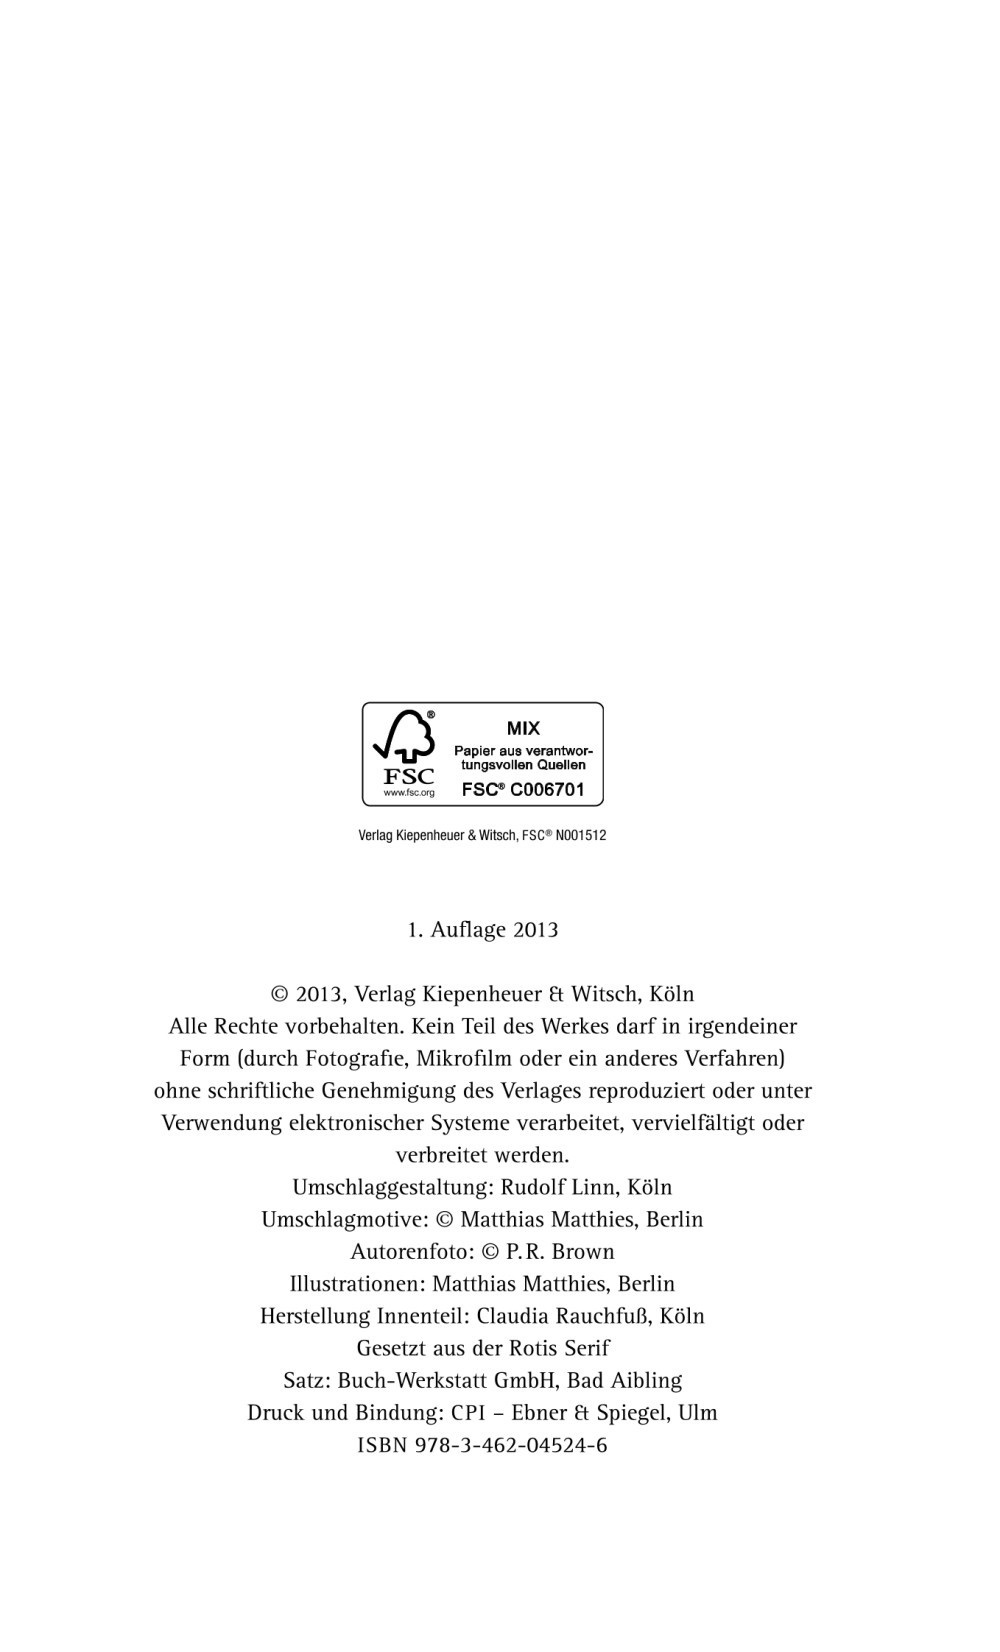 RAMMSTEIN Frontman TILL LINDEMANN's In Stillen Nächten Poetry Book To Be  Issued In English This Year - BraveWords